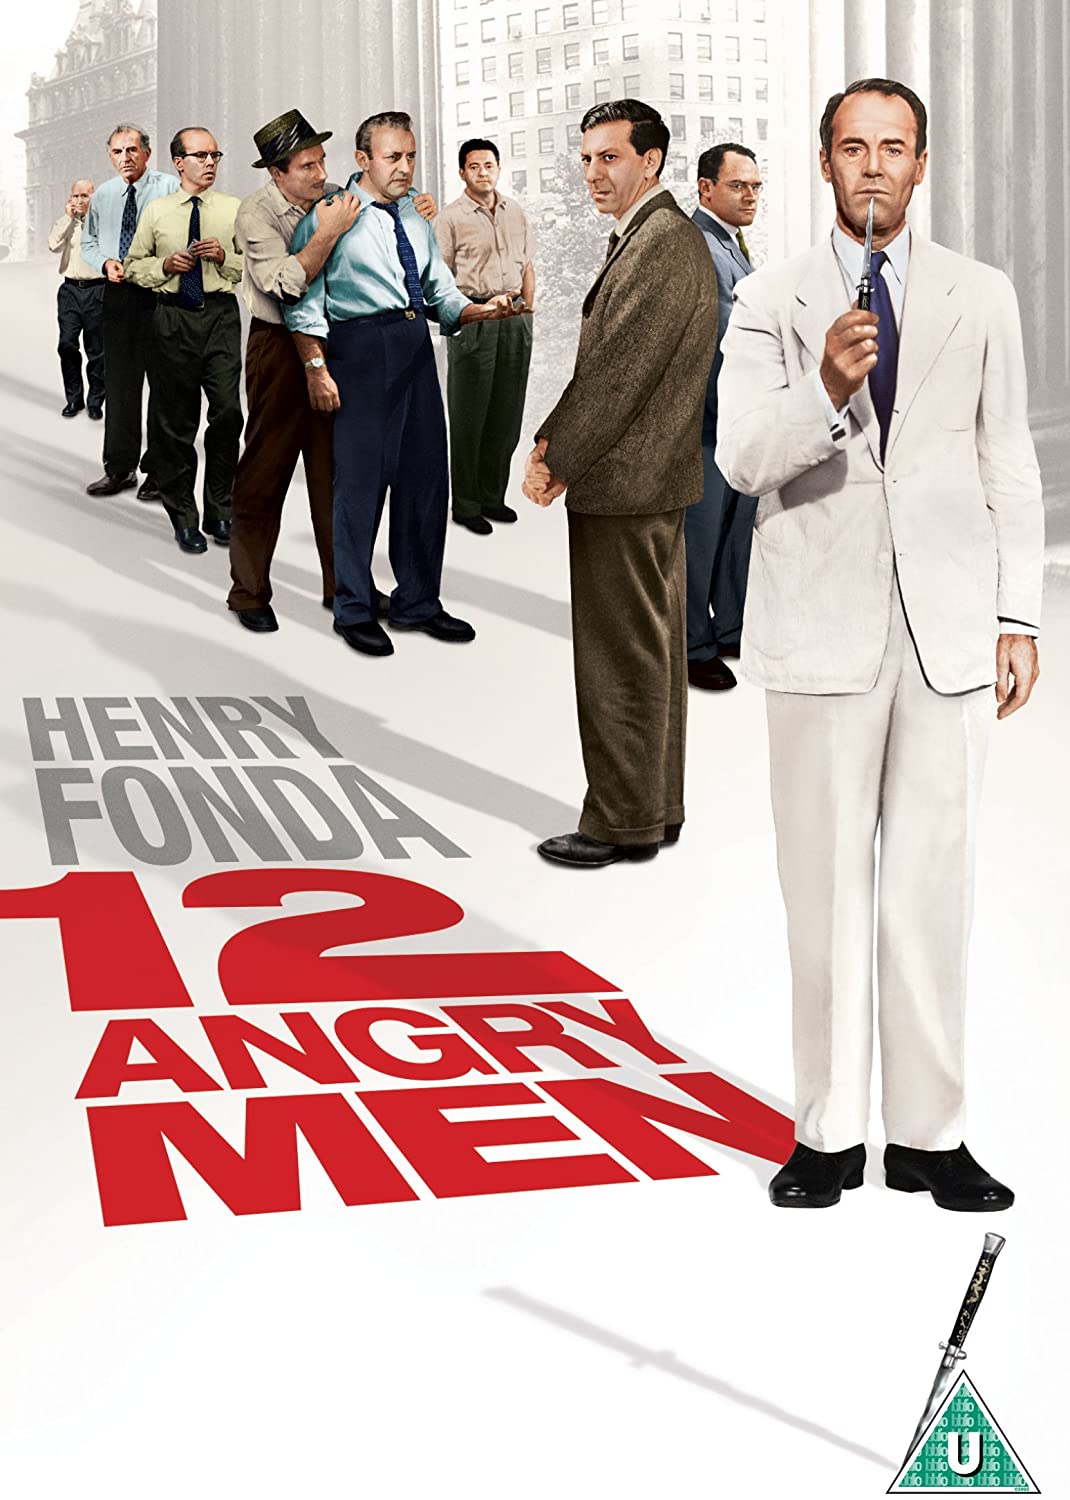 12 Angry Men [1957] [2014] - Drama/Legal drama [DVD]